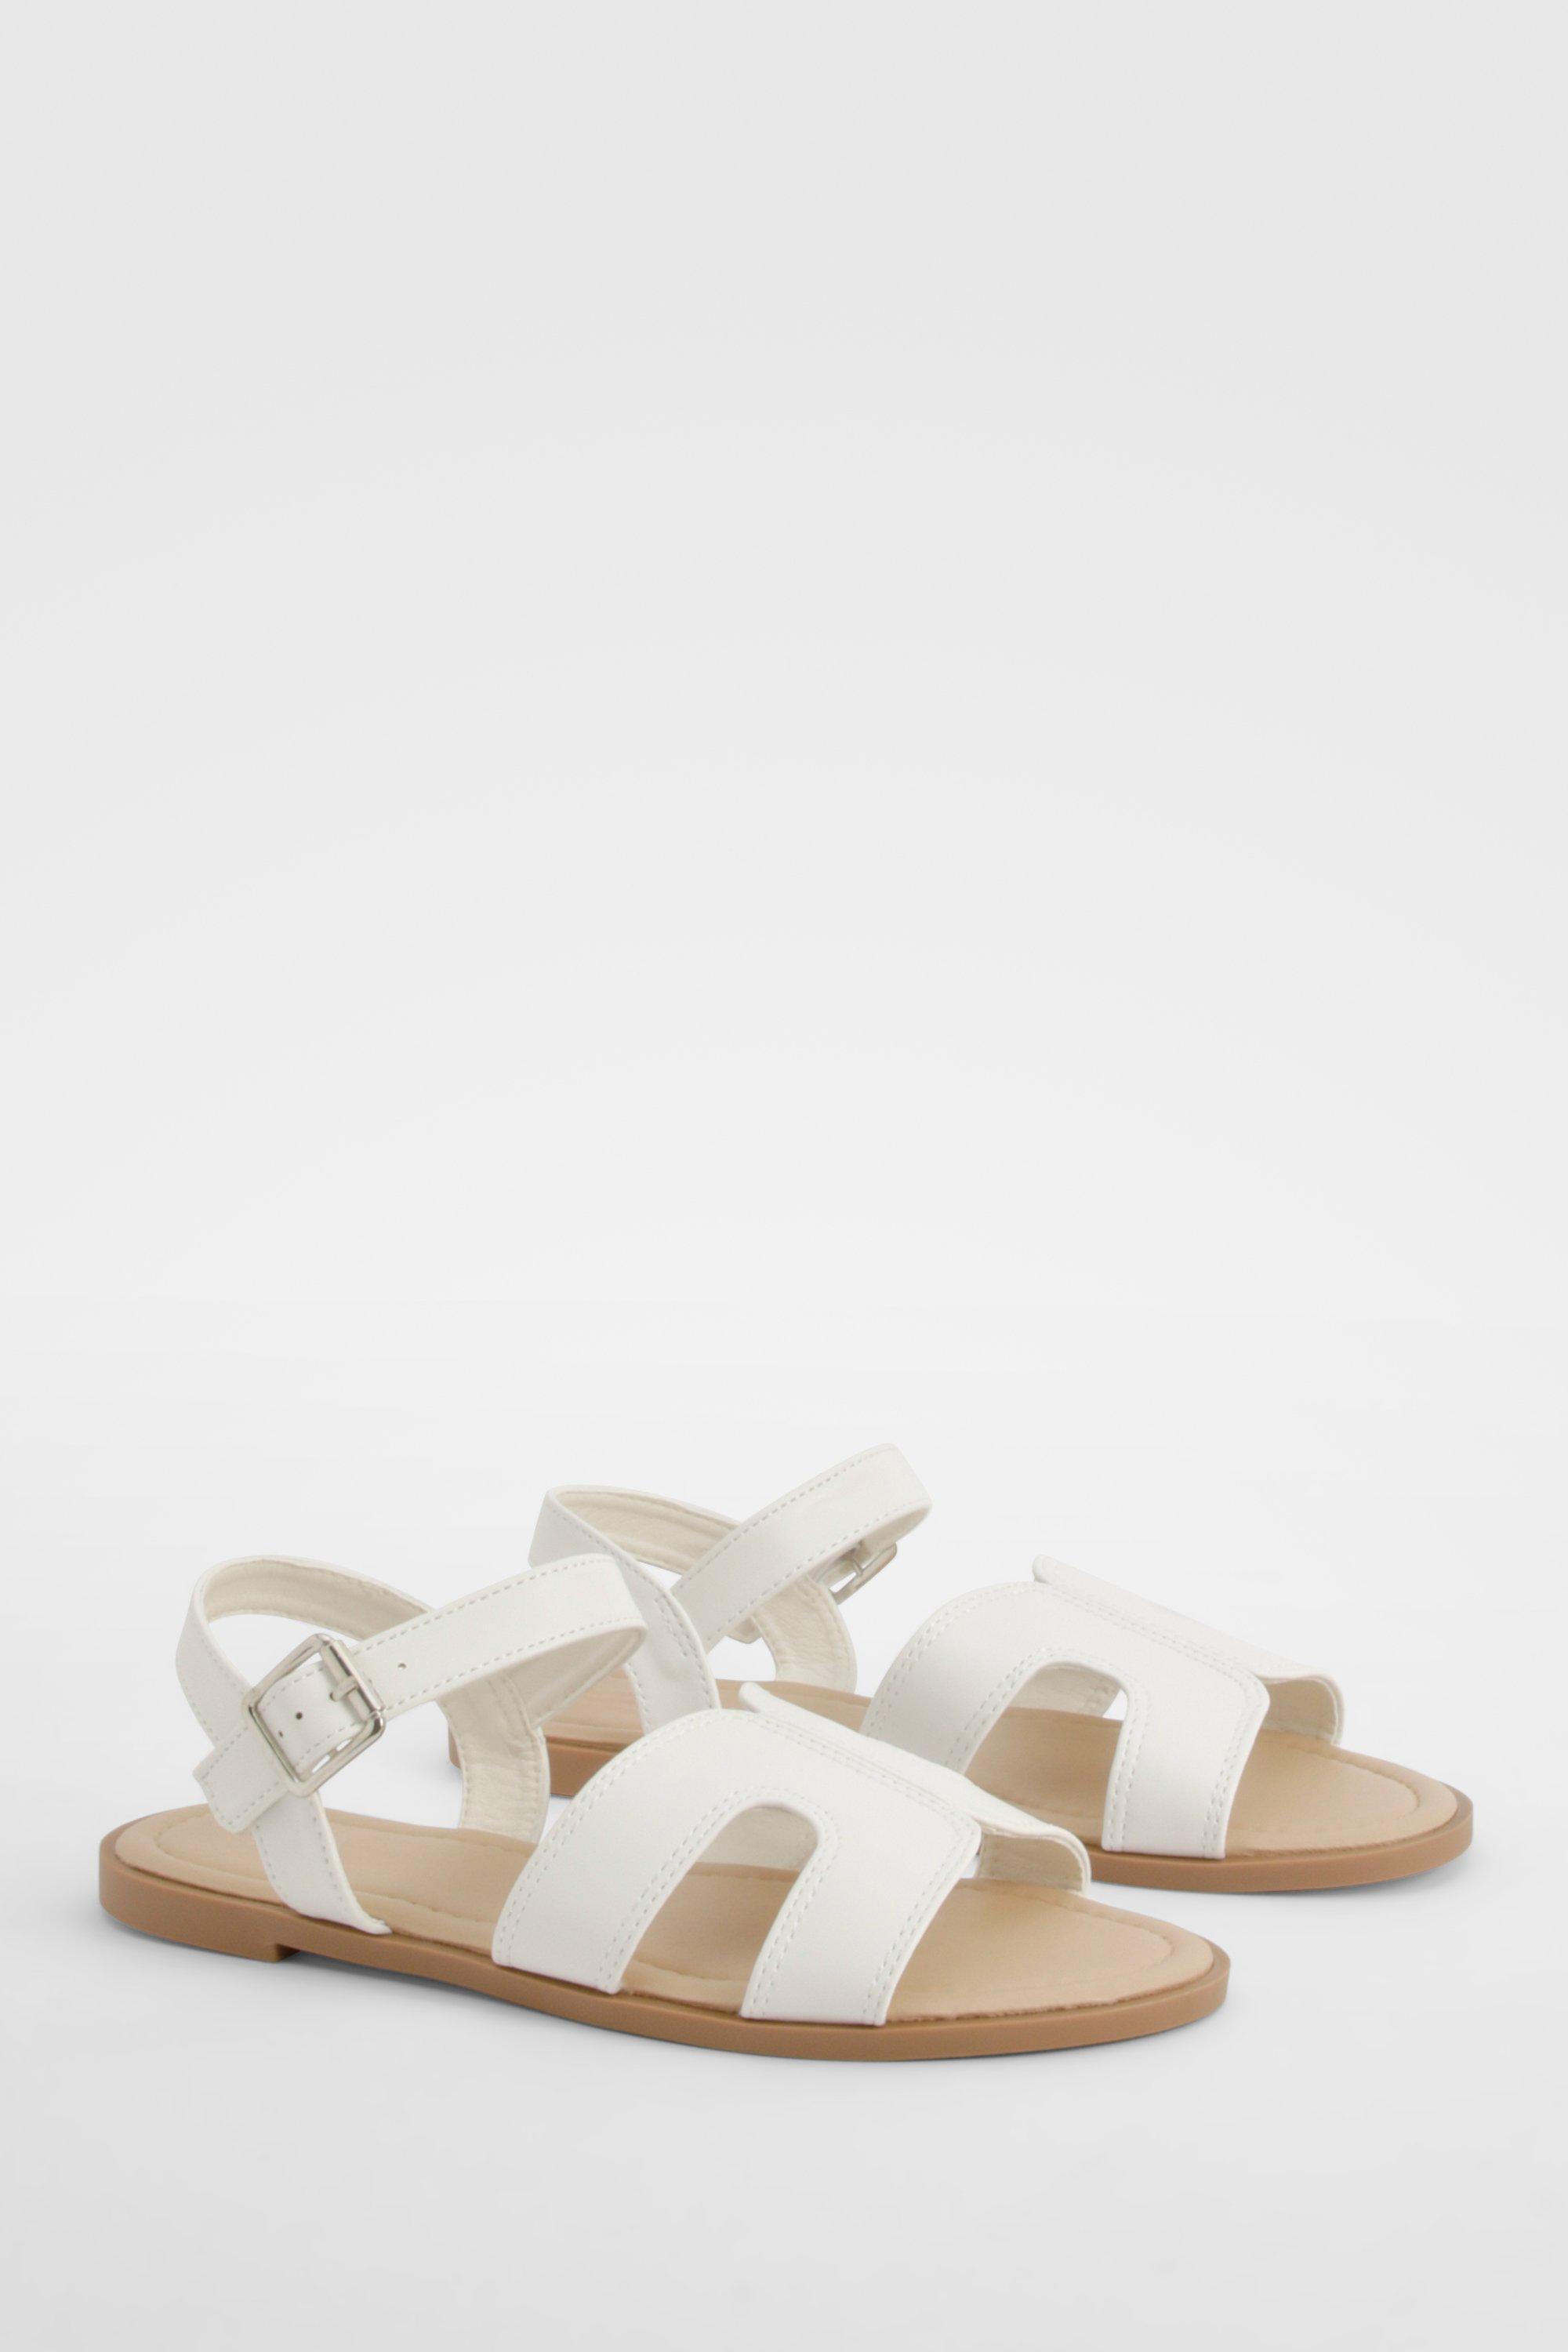 Image of 2 Part Basic Sandals, Bianco